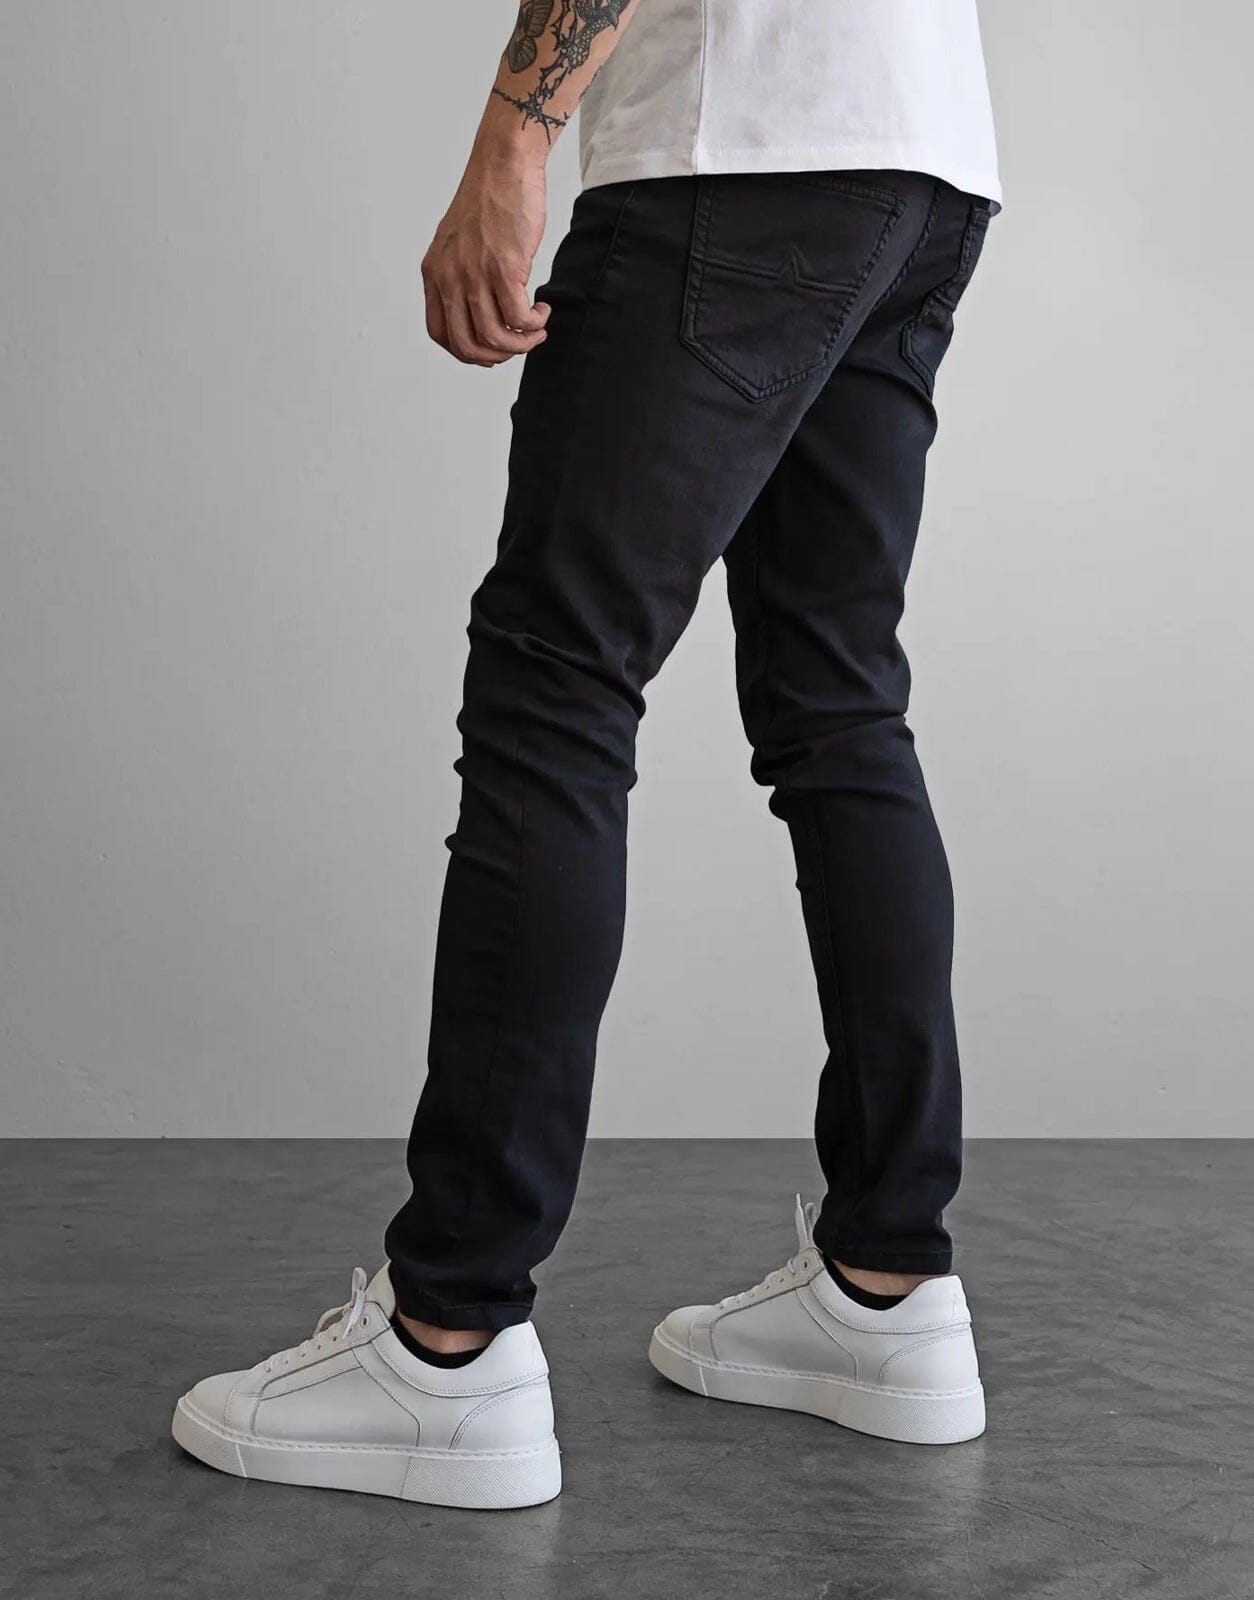 Fade Iconic Graphite Black Jeans